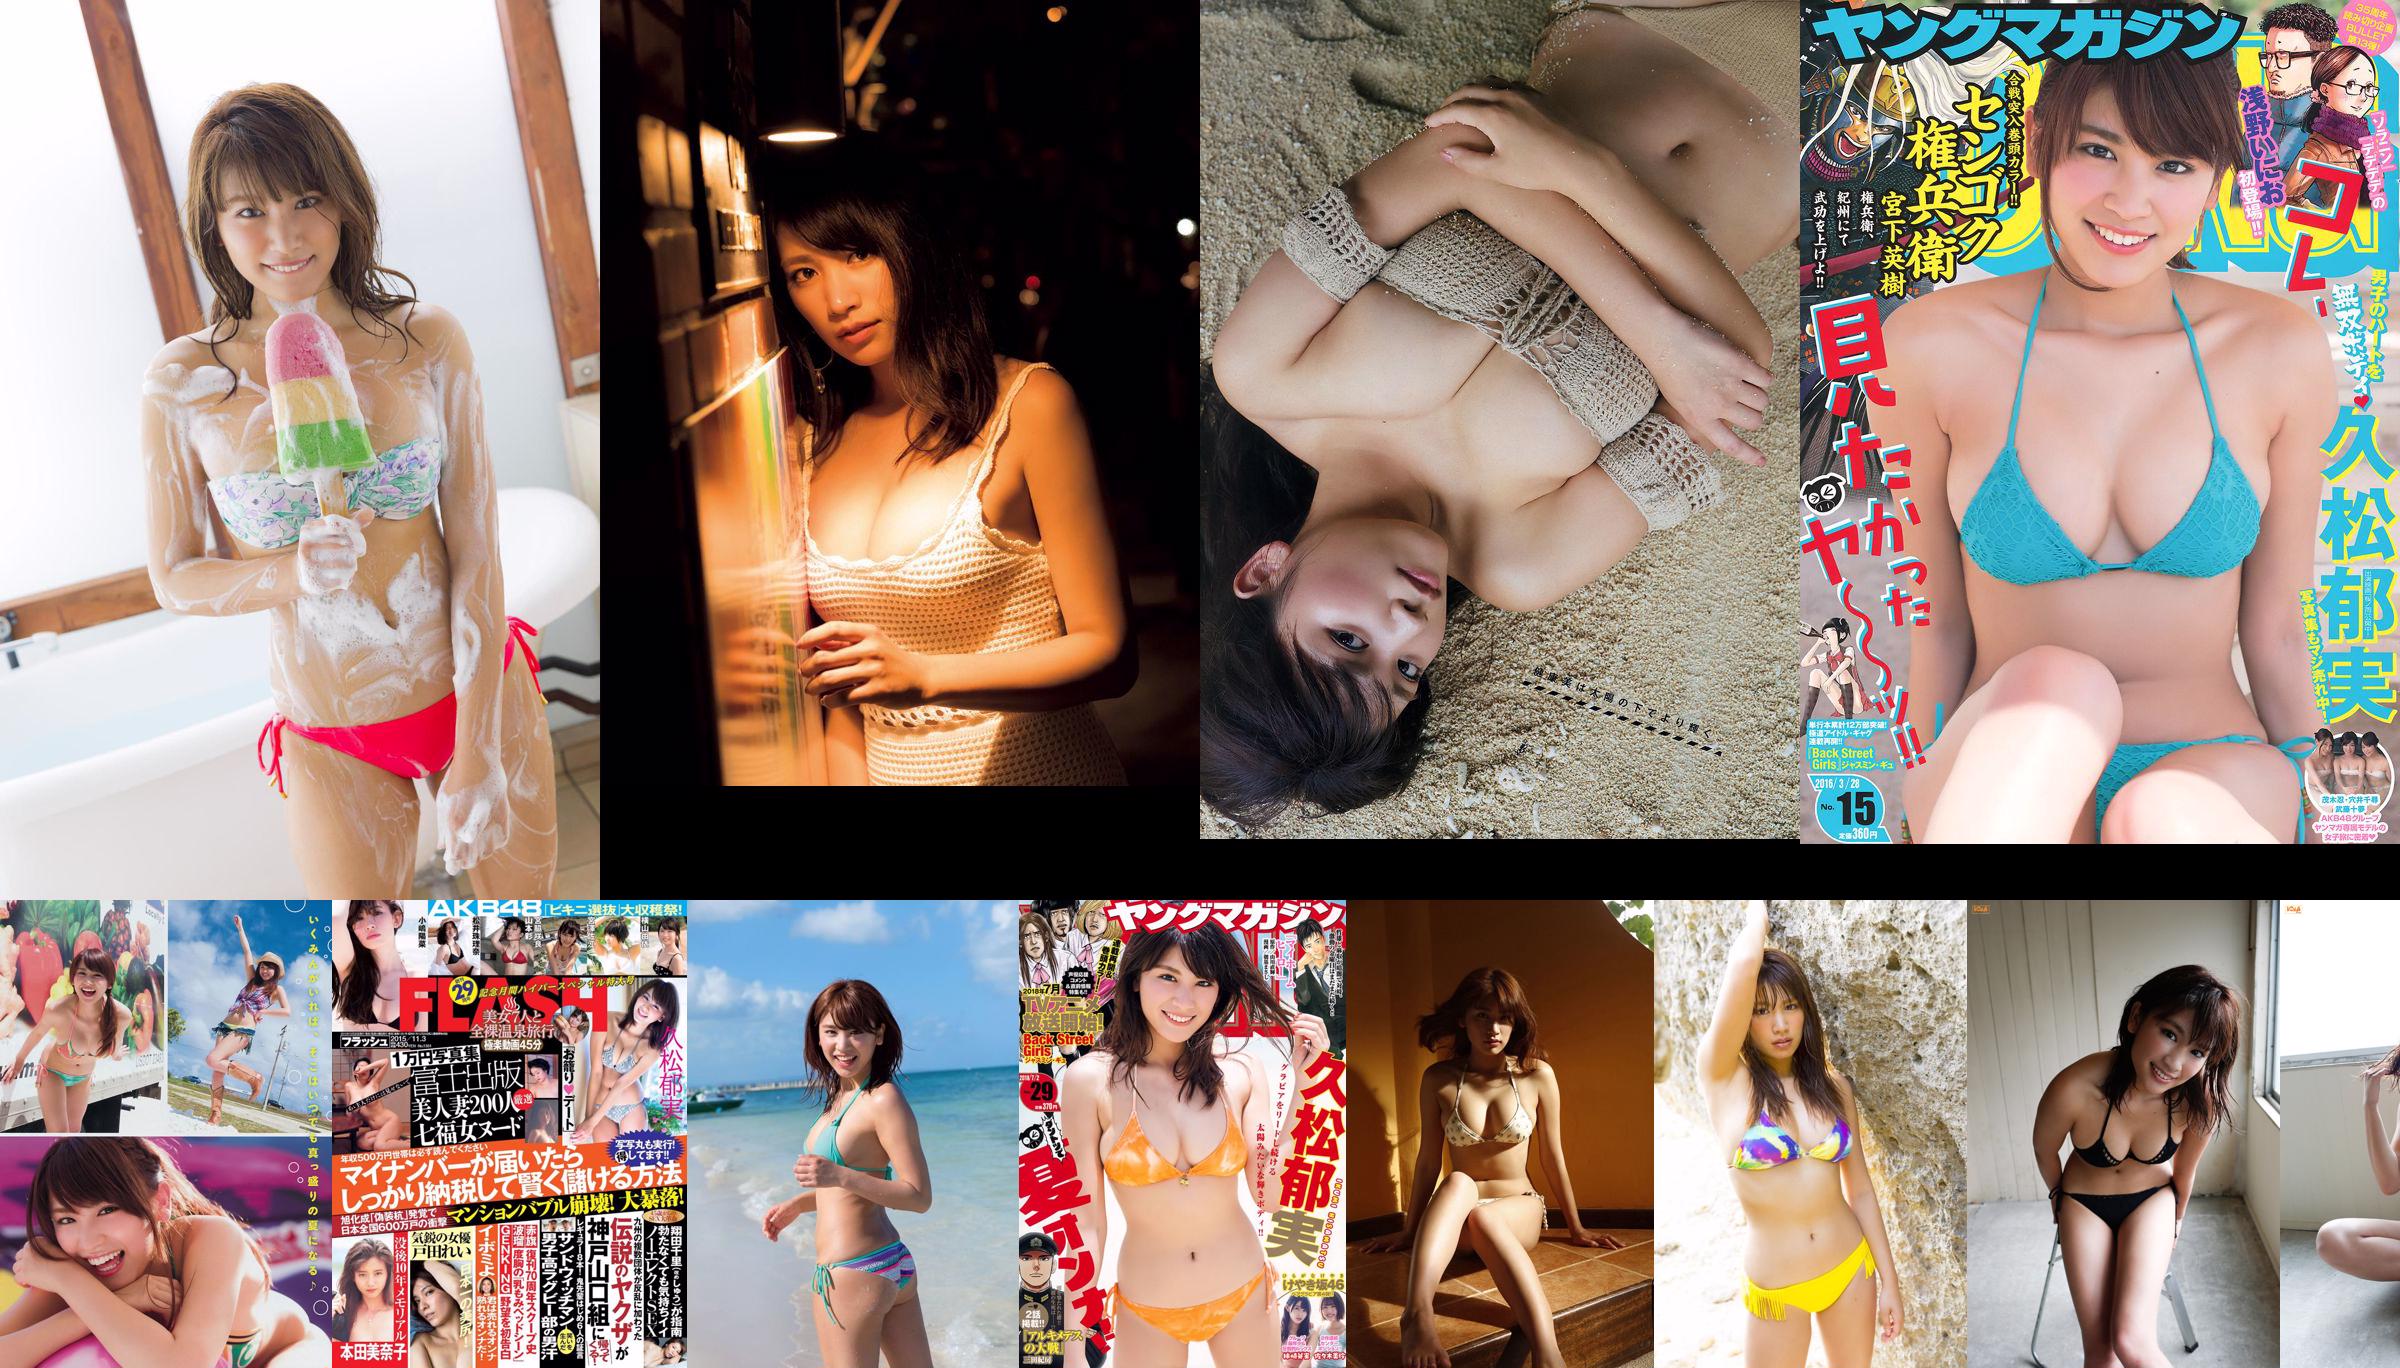 [FLASH] Ikumi Hisamatsu Risa Hirako Ren Ishikawa Angel Moe AKB48 Kaho Shibuya Misuzu Hayashi Ririka 2015.04.21 Foto Mori No.872541 Seite 1